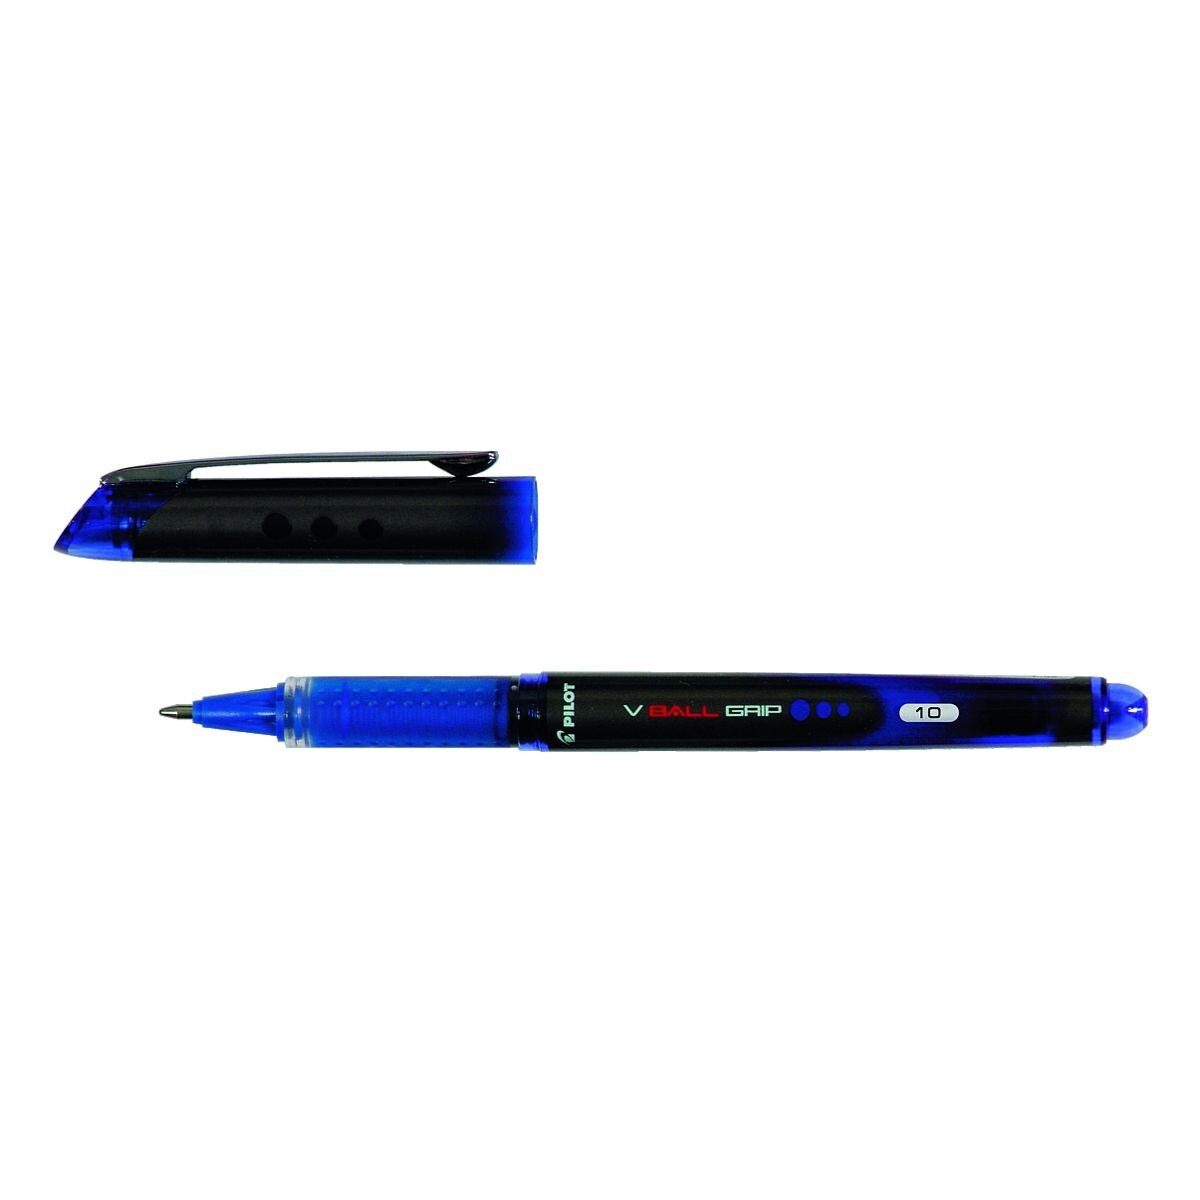 10 0,6 Strickstärke mm blau VBall Grip PILOT (B), Tintenroller